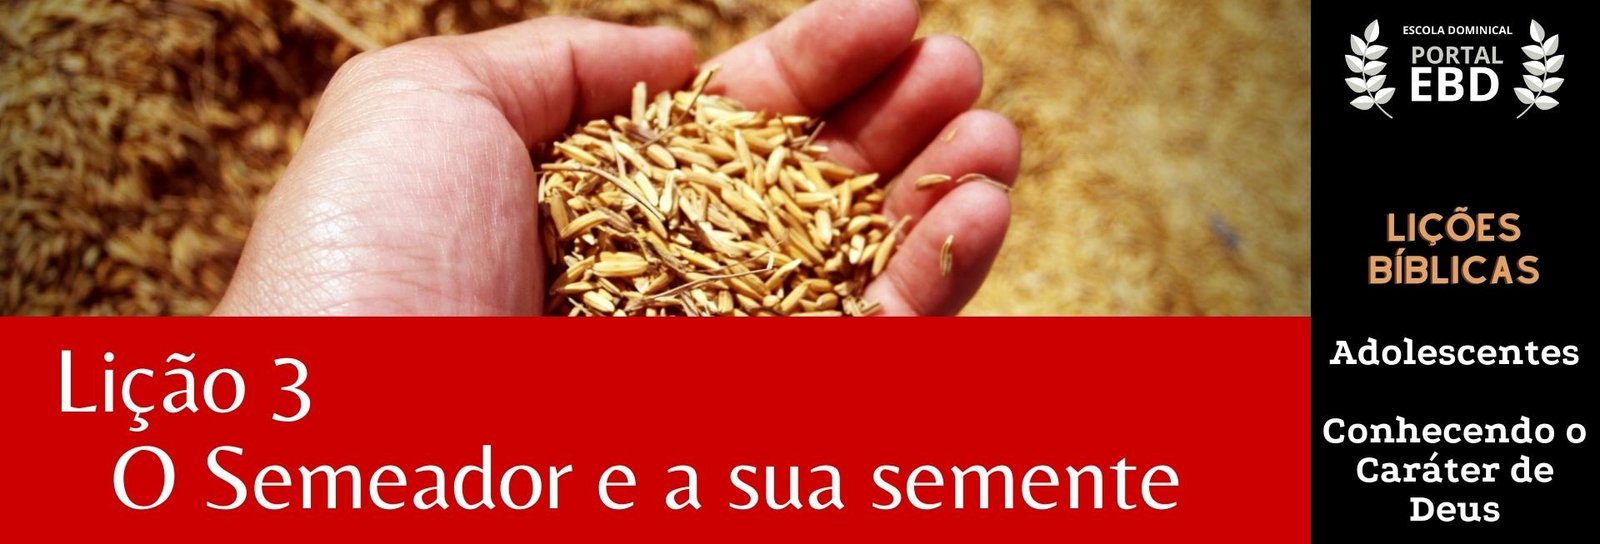 Lição 3 - O semeador e a sua semente I